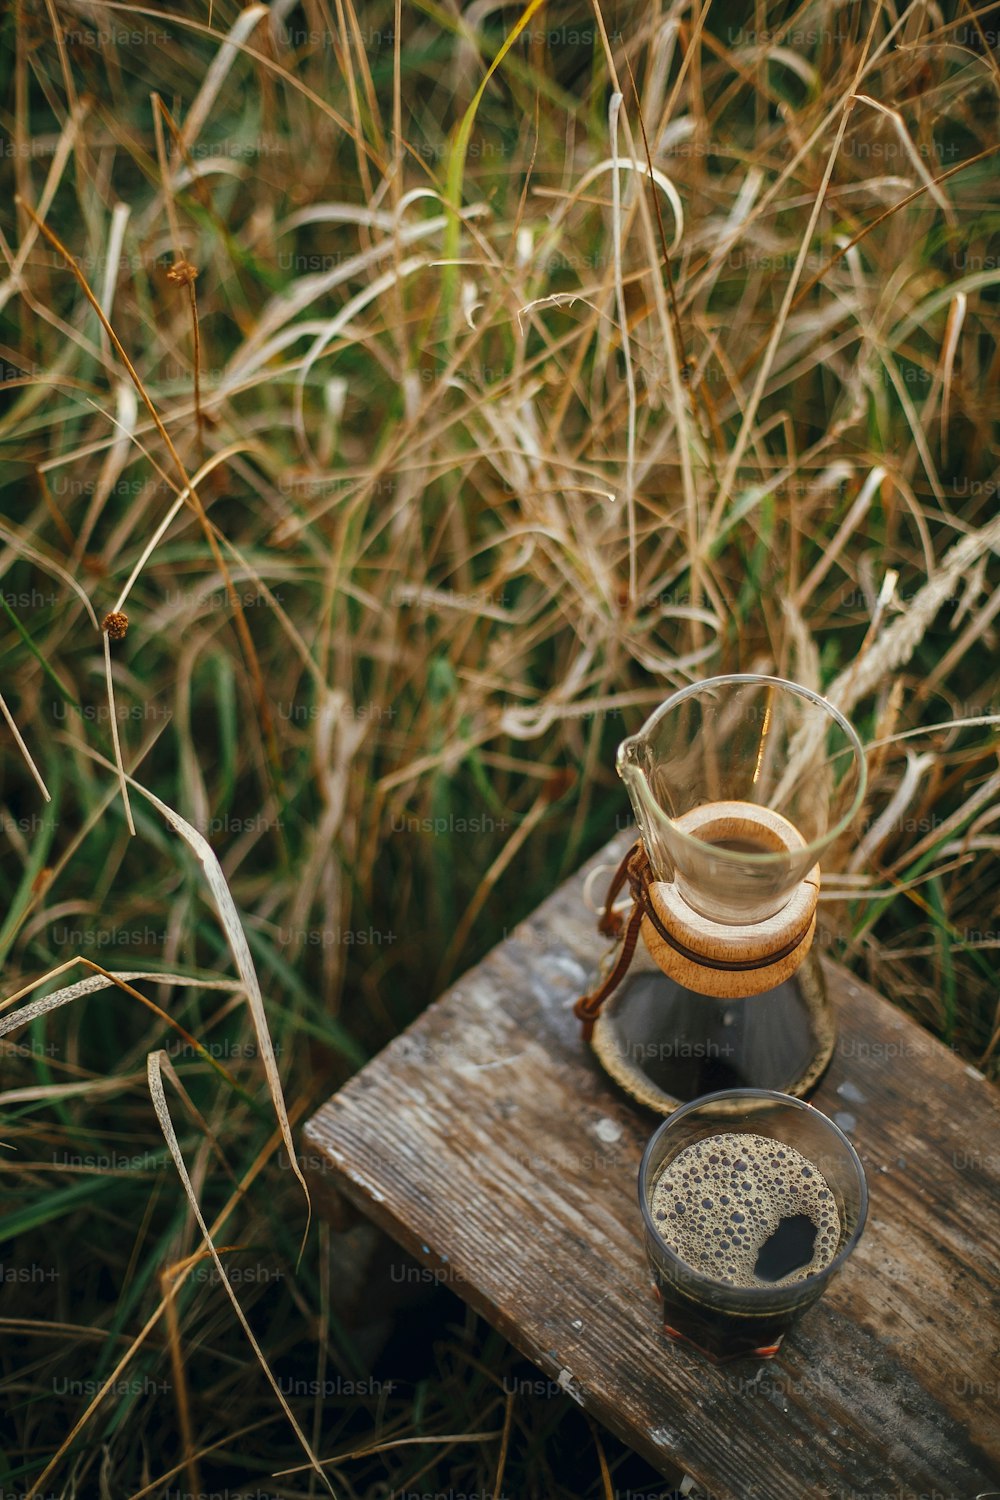 유리 컵에 담긴 뜨거운 커피와 시골 허브의 햇볕이 잘 드는 따뜻한 빛을 배경으로 유리 플라스크. 여행 중 야외에서 대체 커피 추출. 분위기 있는 소박한 고요한 순간. 세로 이미지